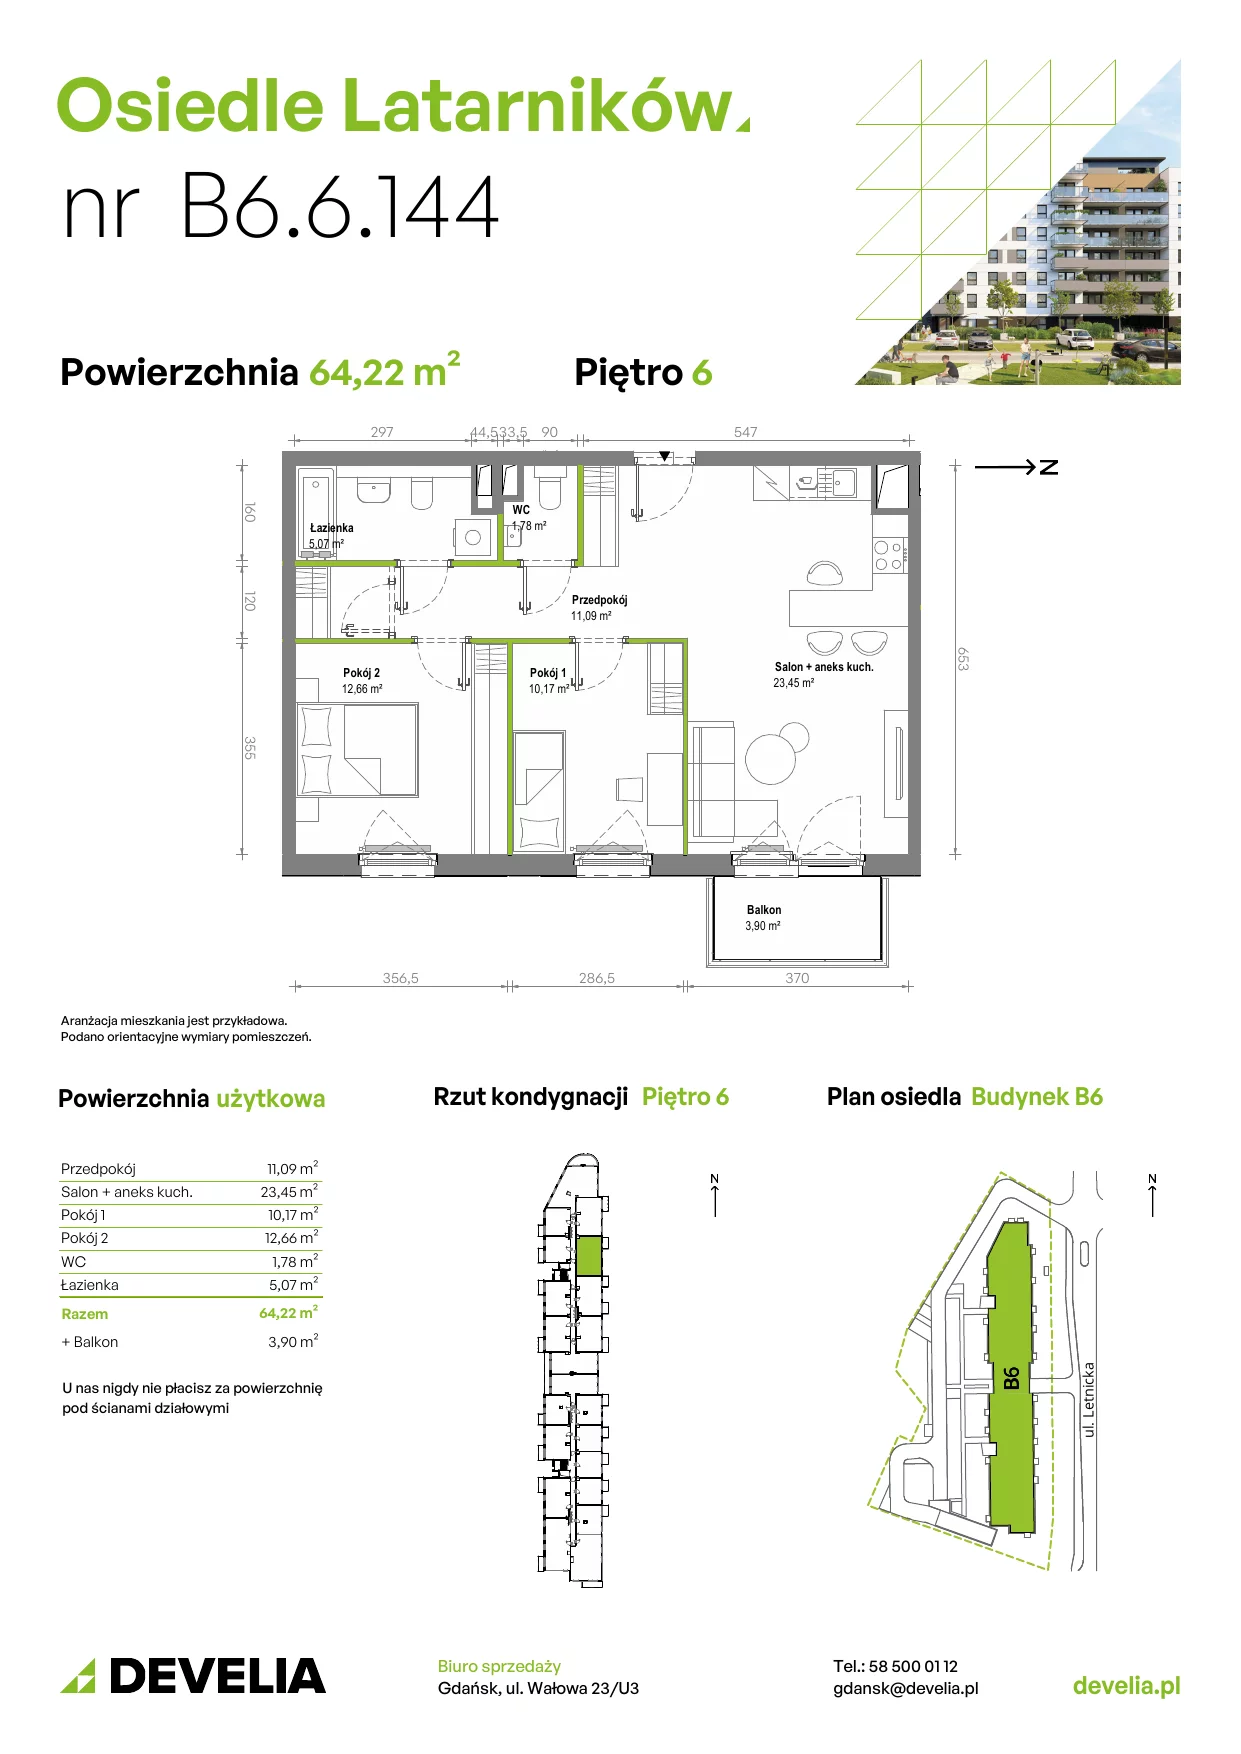 Mieszkanie 64,13 m², piętro 6, oferta nr B6.6.144, Osiedle Latarników, Gdańsk, Letnica, ul. Letnicka 1